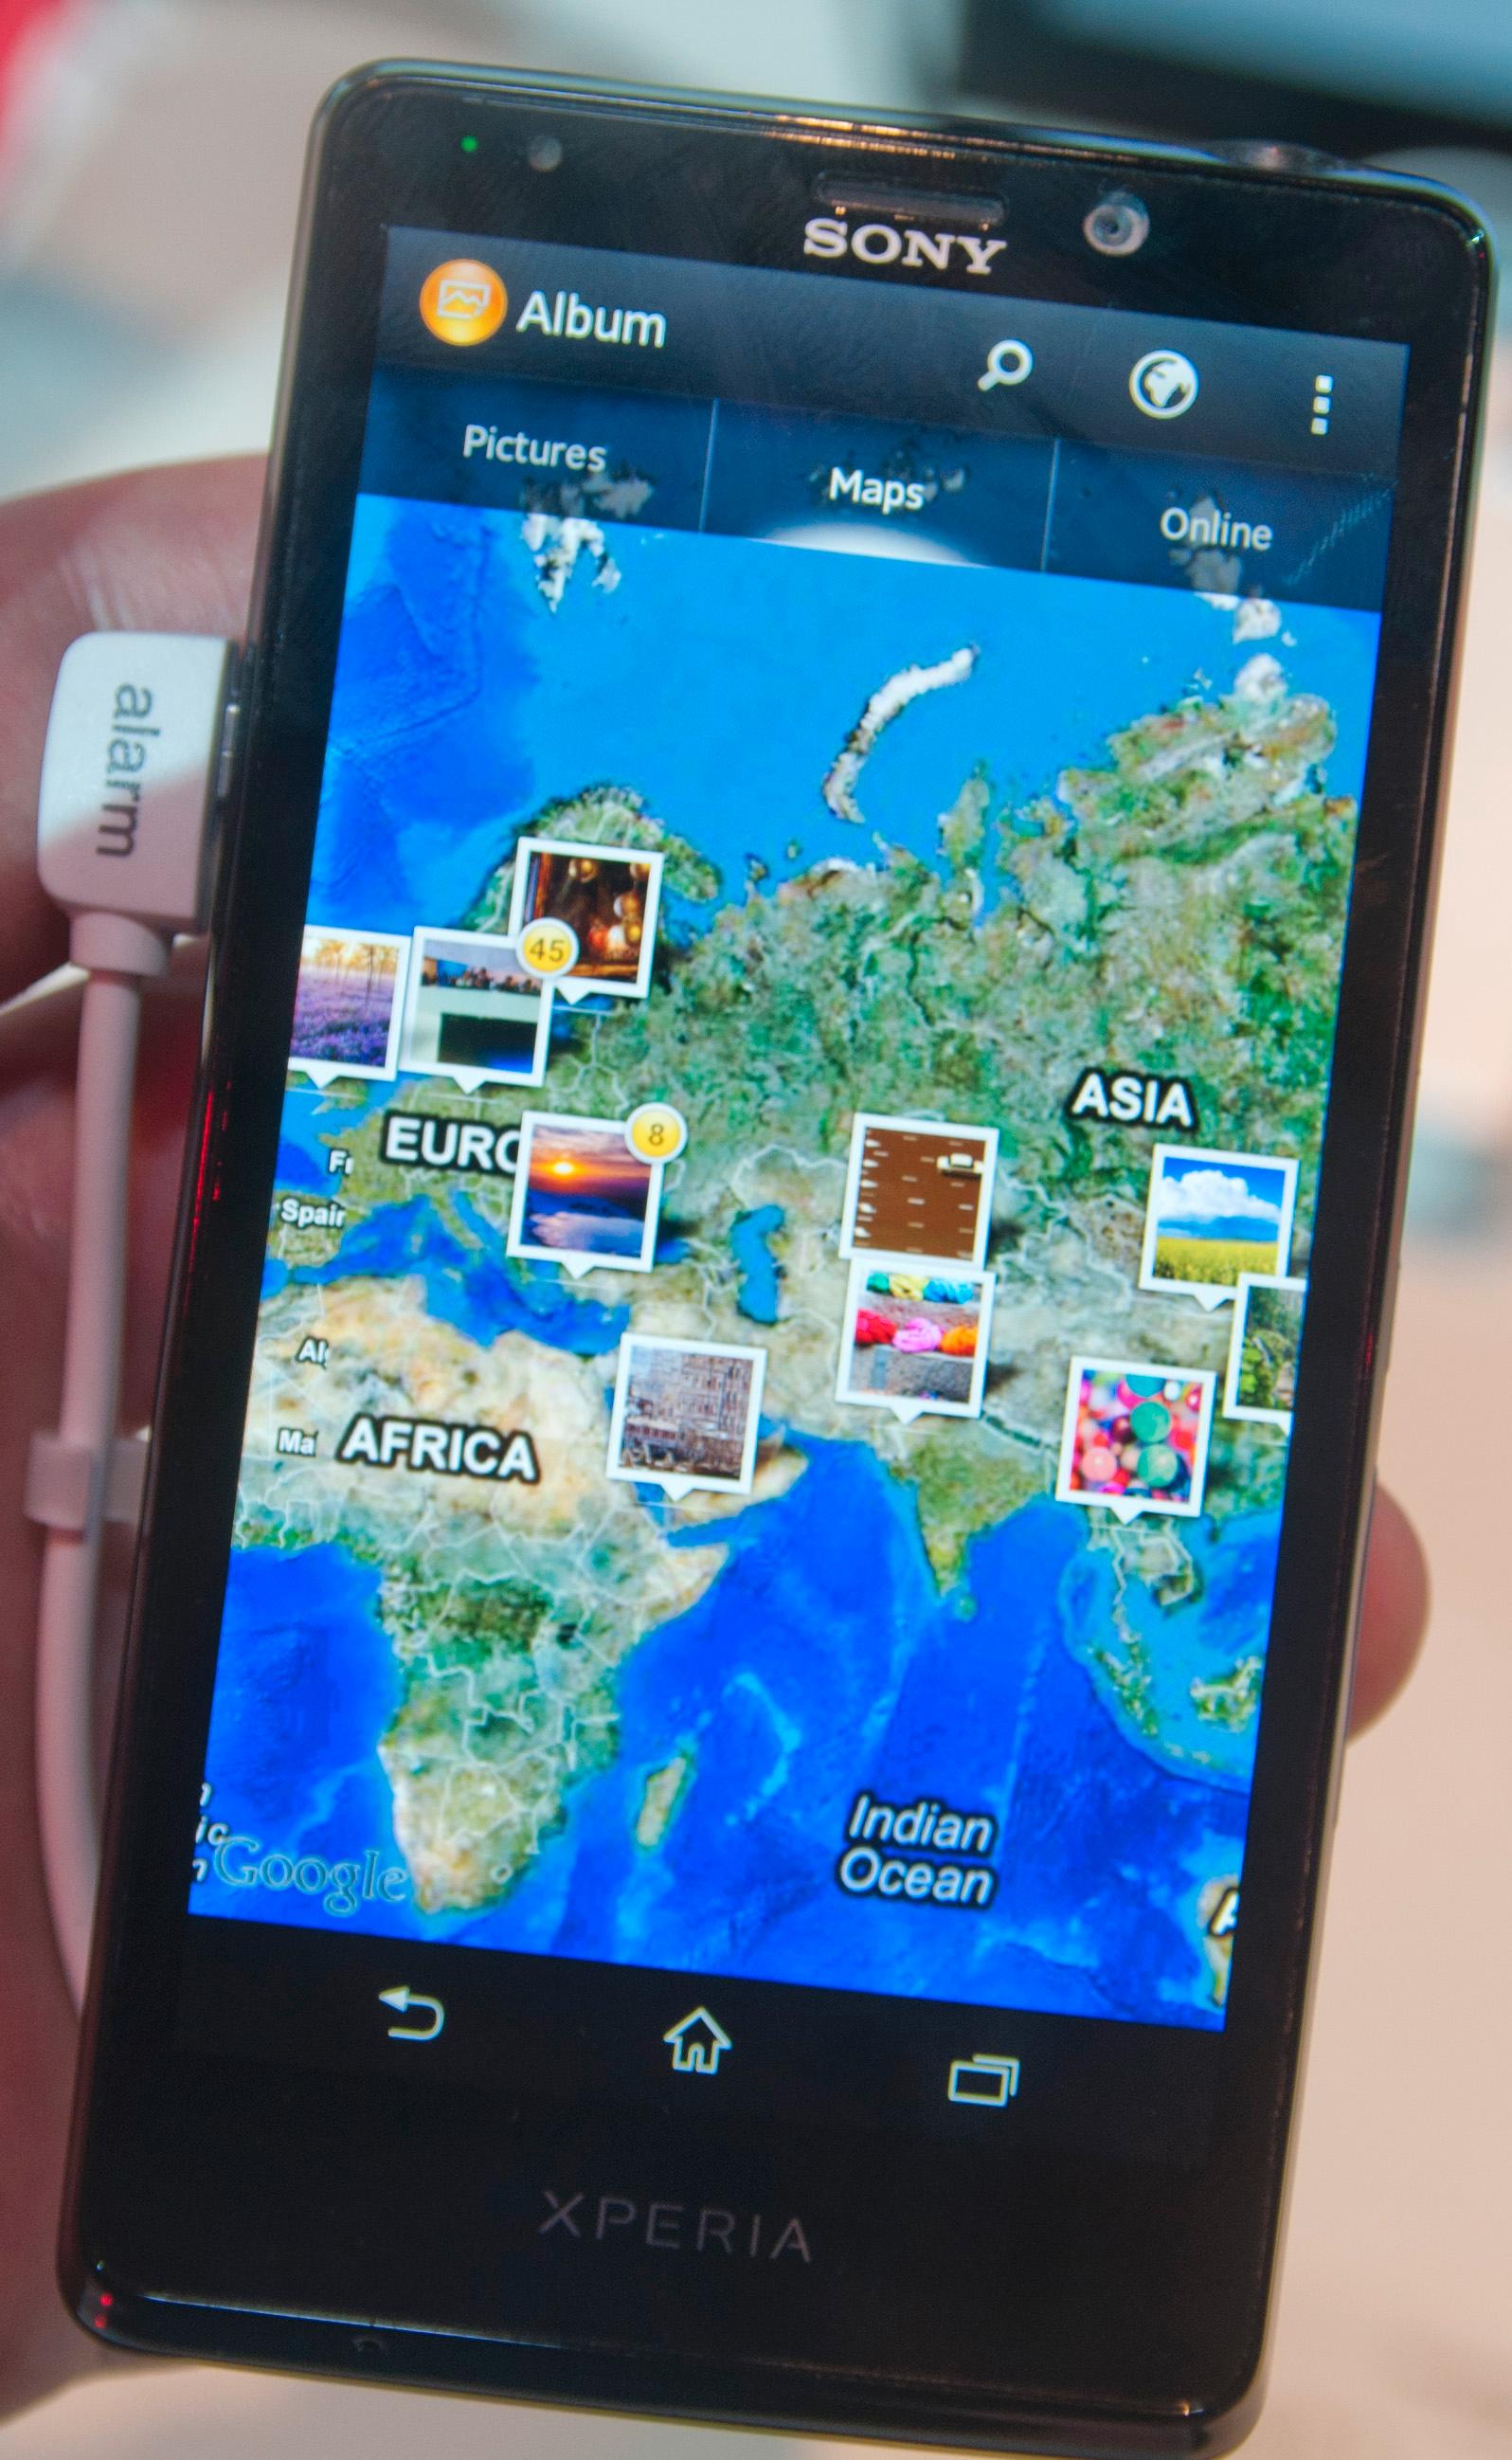 Feriebildene dine merkes med stedsinformasjon og kan vises ut over et kart i galleri-appen.